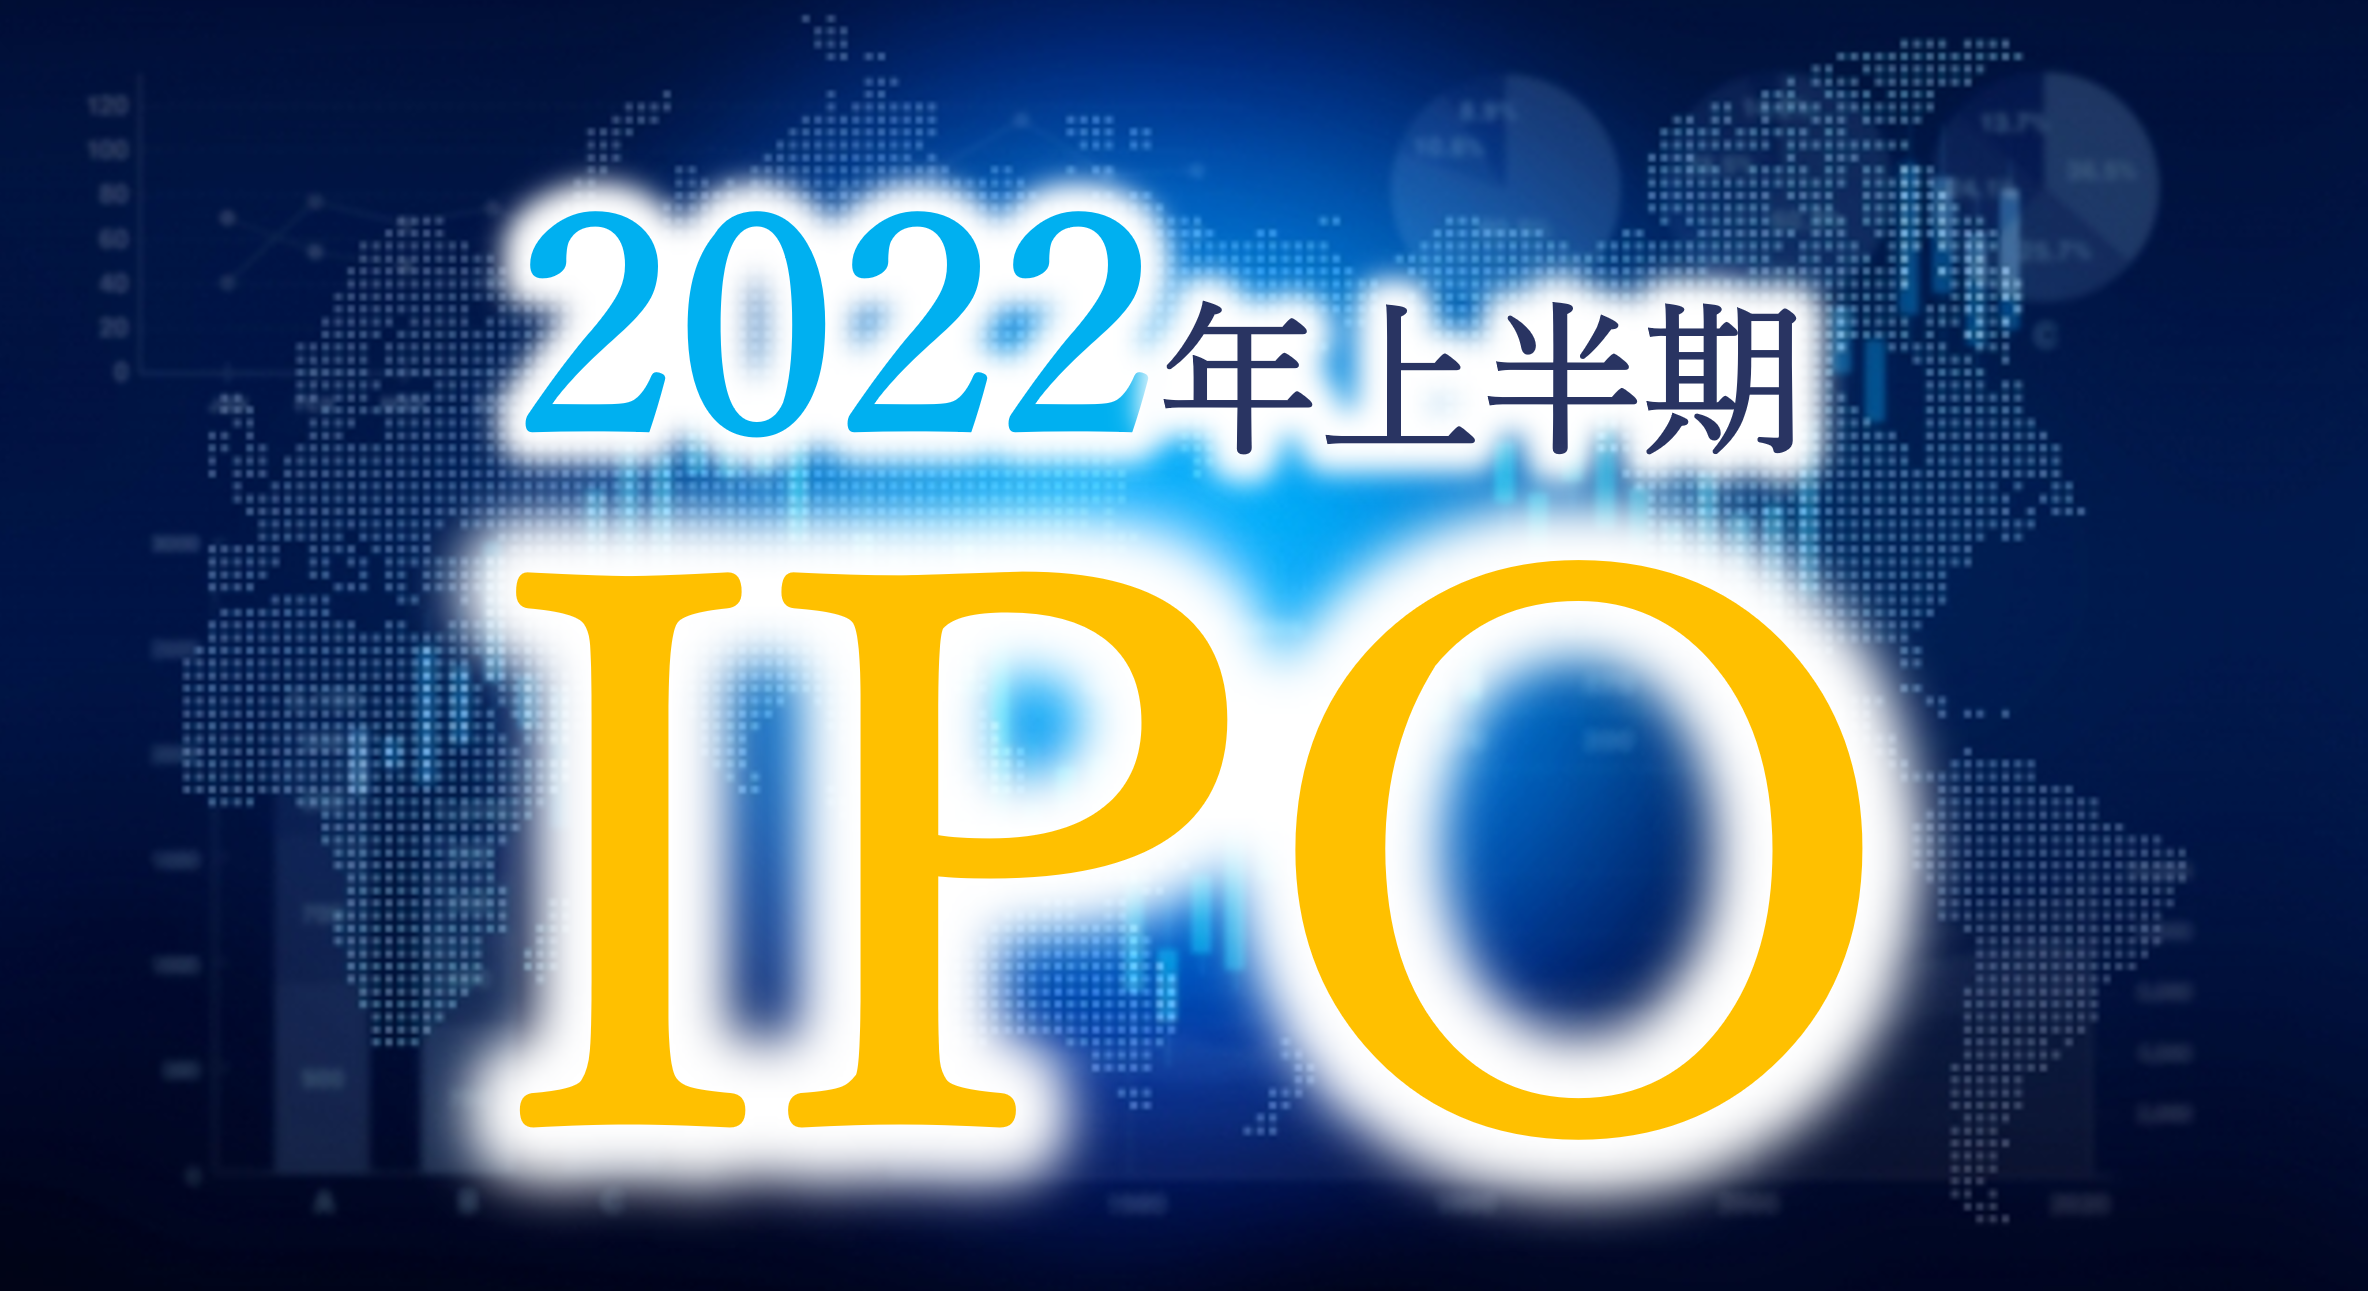 2022年IPOは37社で着地しました。2021年の53社と比べると16社減という厳しい結果になりました。この理由は何か？また上半期IPO企業の特徴は？業種別・所在地別・監査法人別・証券会社別に船井総研が分析。